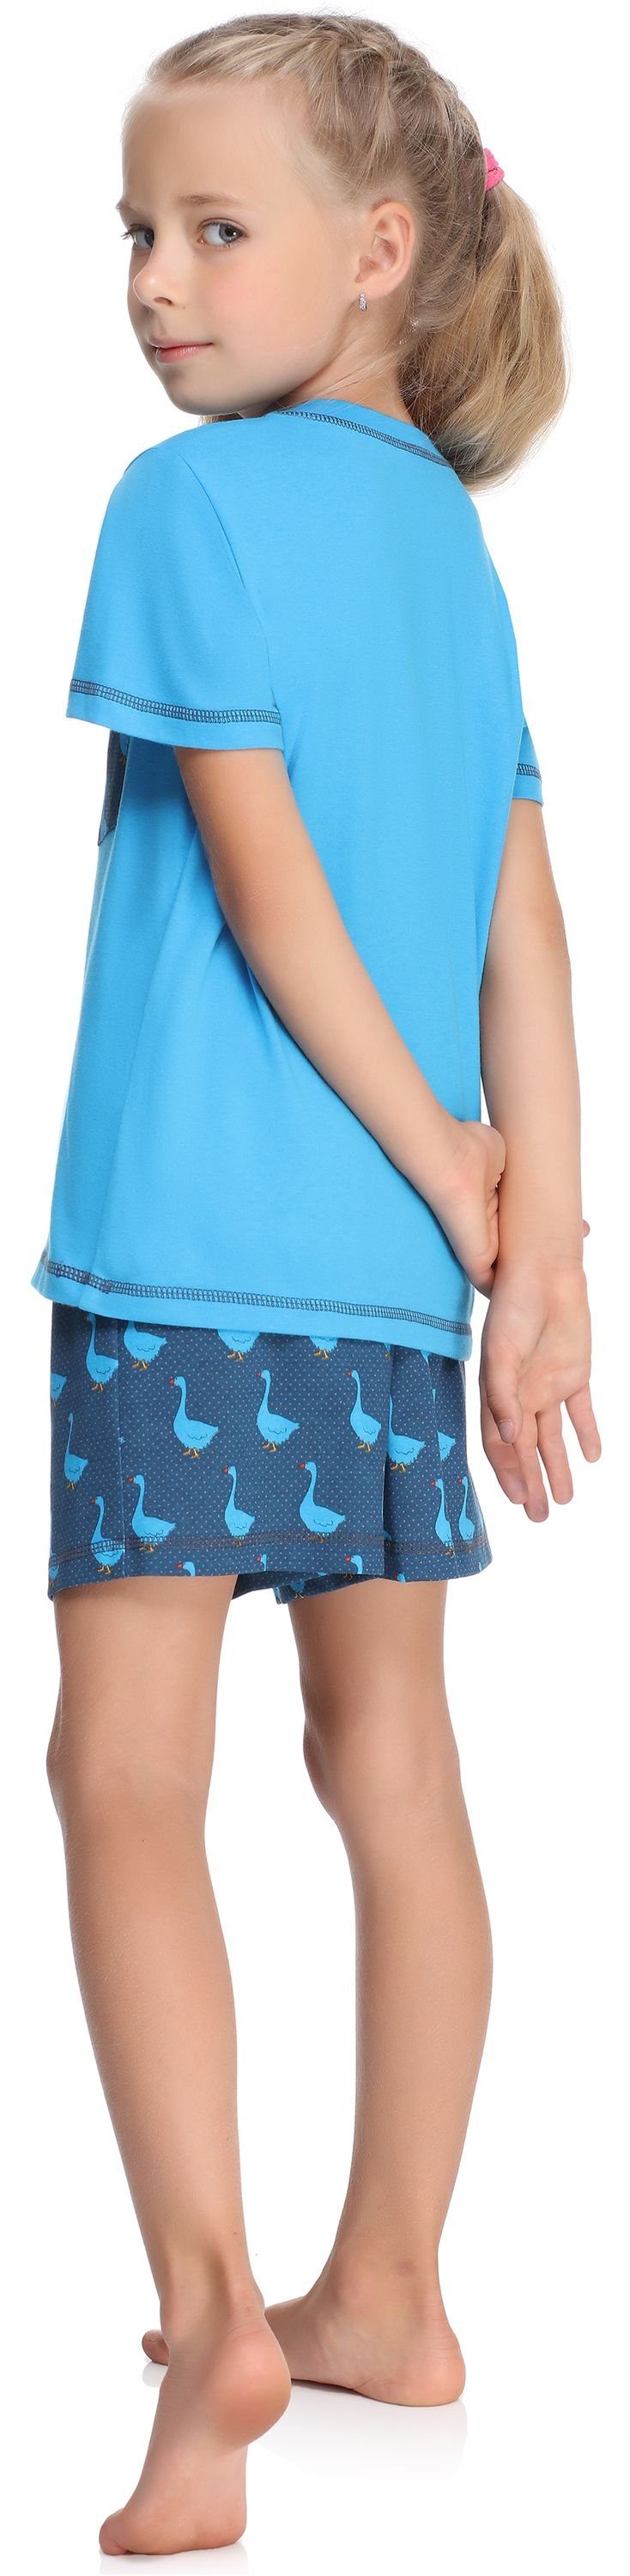 Mädchen Pyjama Set Baumwolle Schlafanzüge Style aus MS10-292 Blau/Gans Schlafanzug Merry Kurz